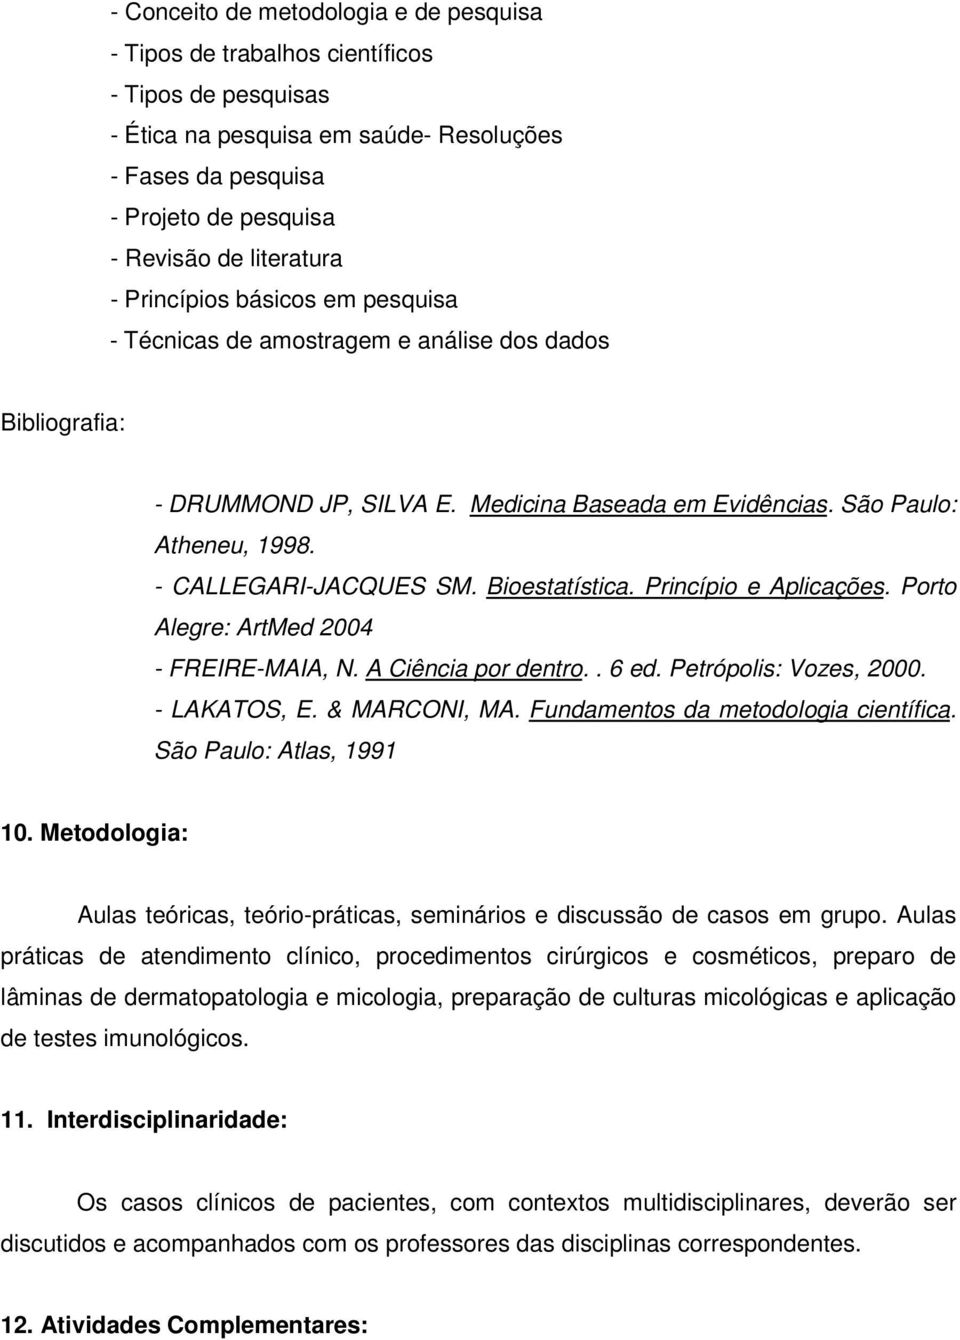 - CALLEGARI-JACQUES SM. Bioestatística. Princípio e Aplicações. Porto Alegre: ArtMed 2004 - FREIRE-MAIA, N. A Ciência por dentro.. 6 ed. Petrópolis: Vozes, 2000. - LAKATOS, E. & MARCONI, MA.